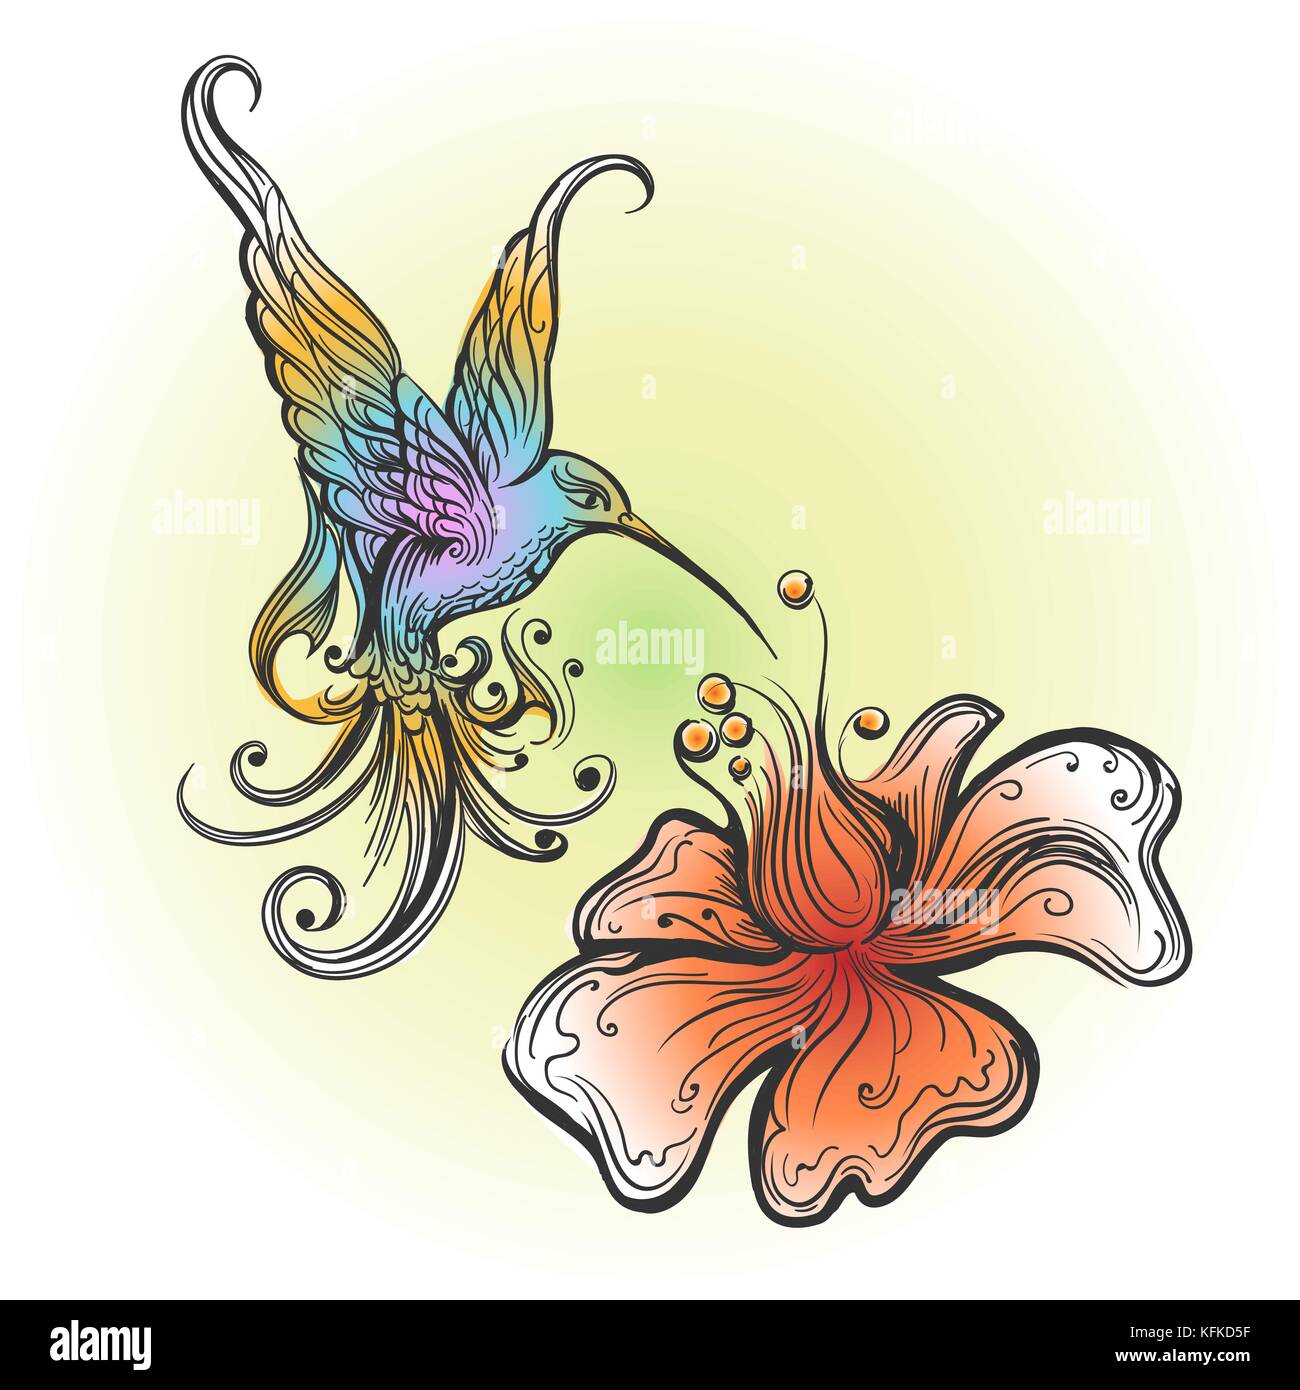 Flying hummingbird sorseggiando il nettare dal fiore disegnato in stile tatuaggio. illustrazione vettoriale Illustrazione Vettoriale